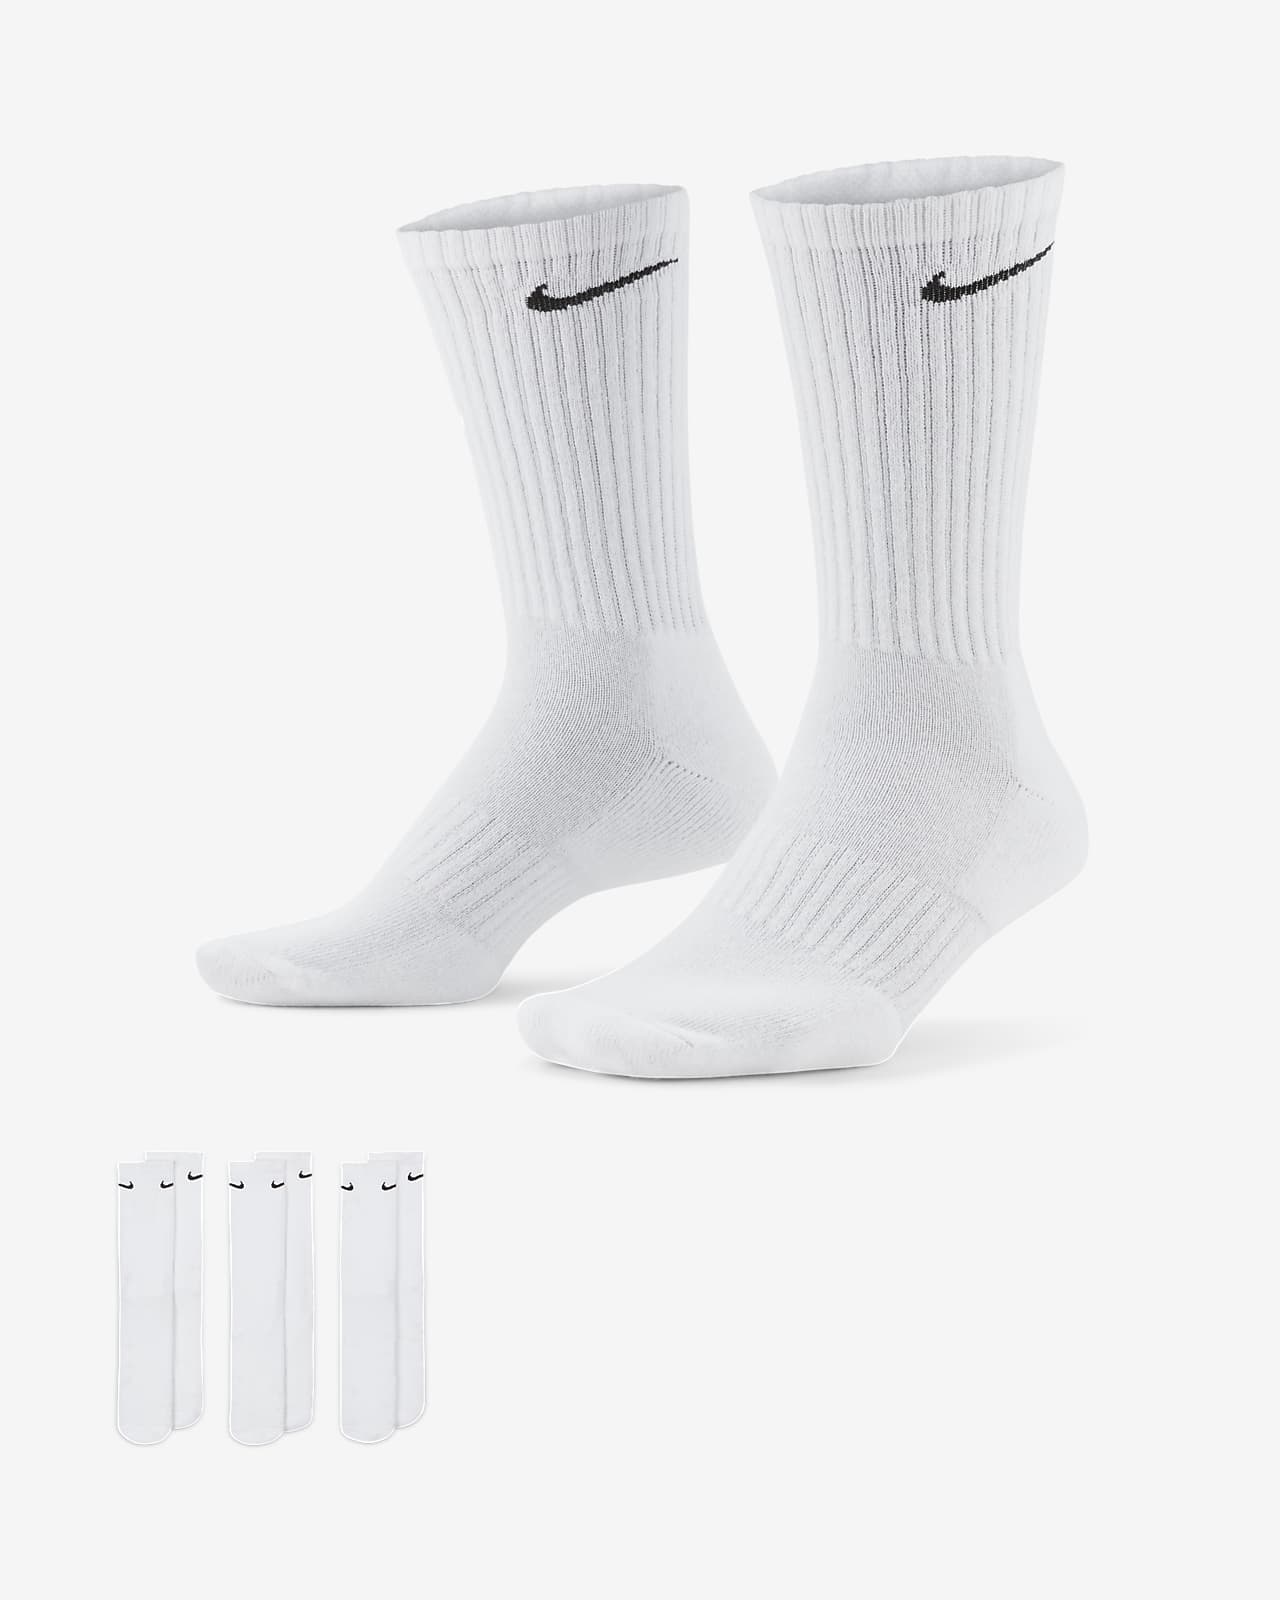 ถุงเท้าเทรนนิ่งข้อยาว Nike Everyday Cushioned (3 คู่)